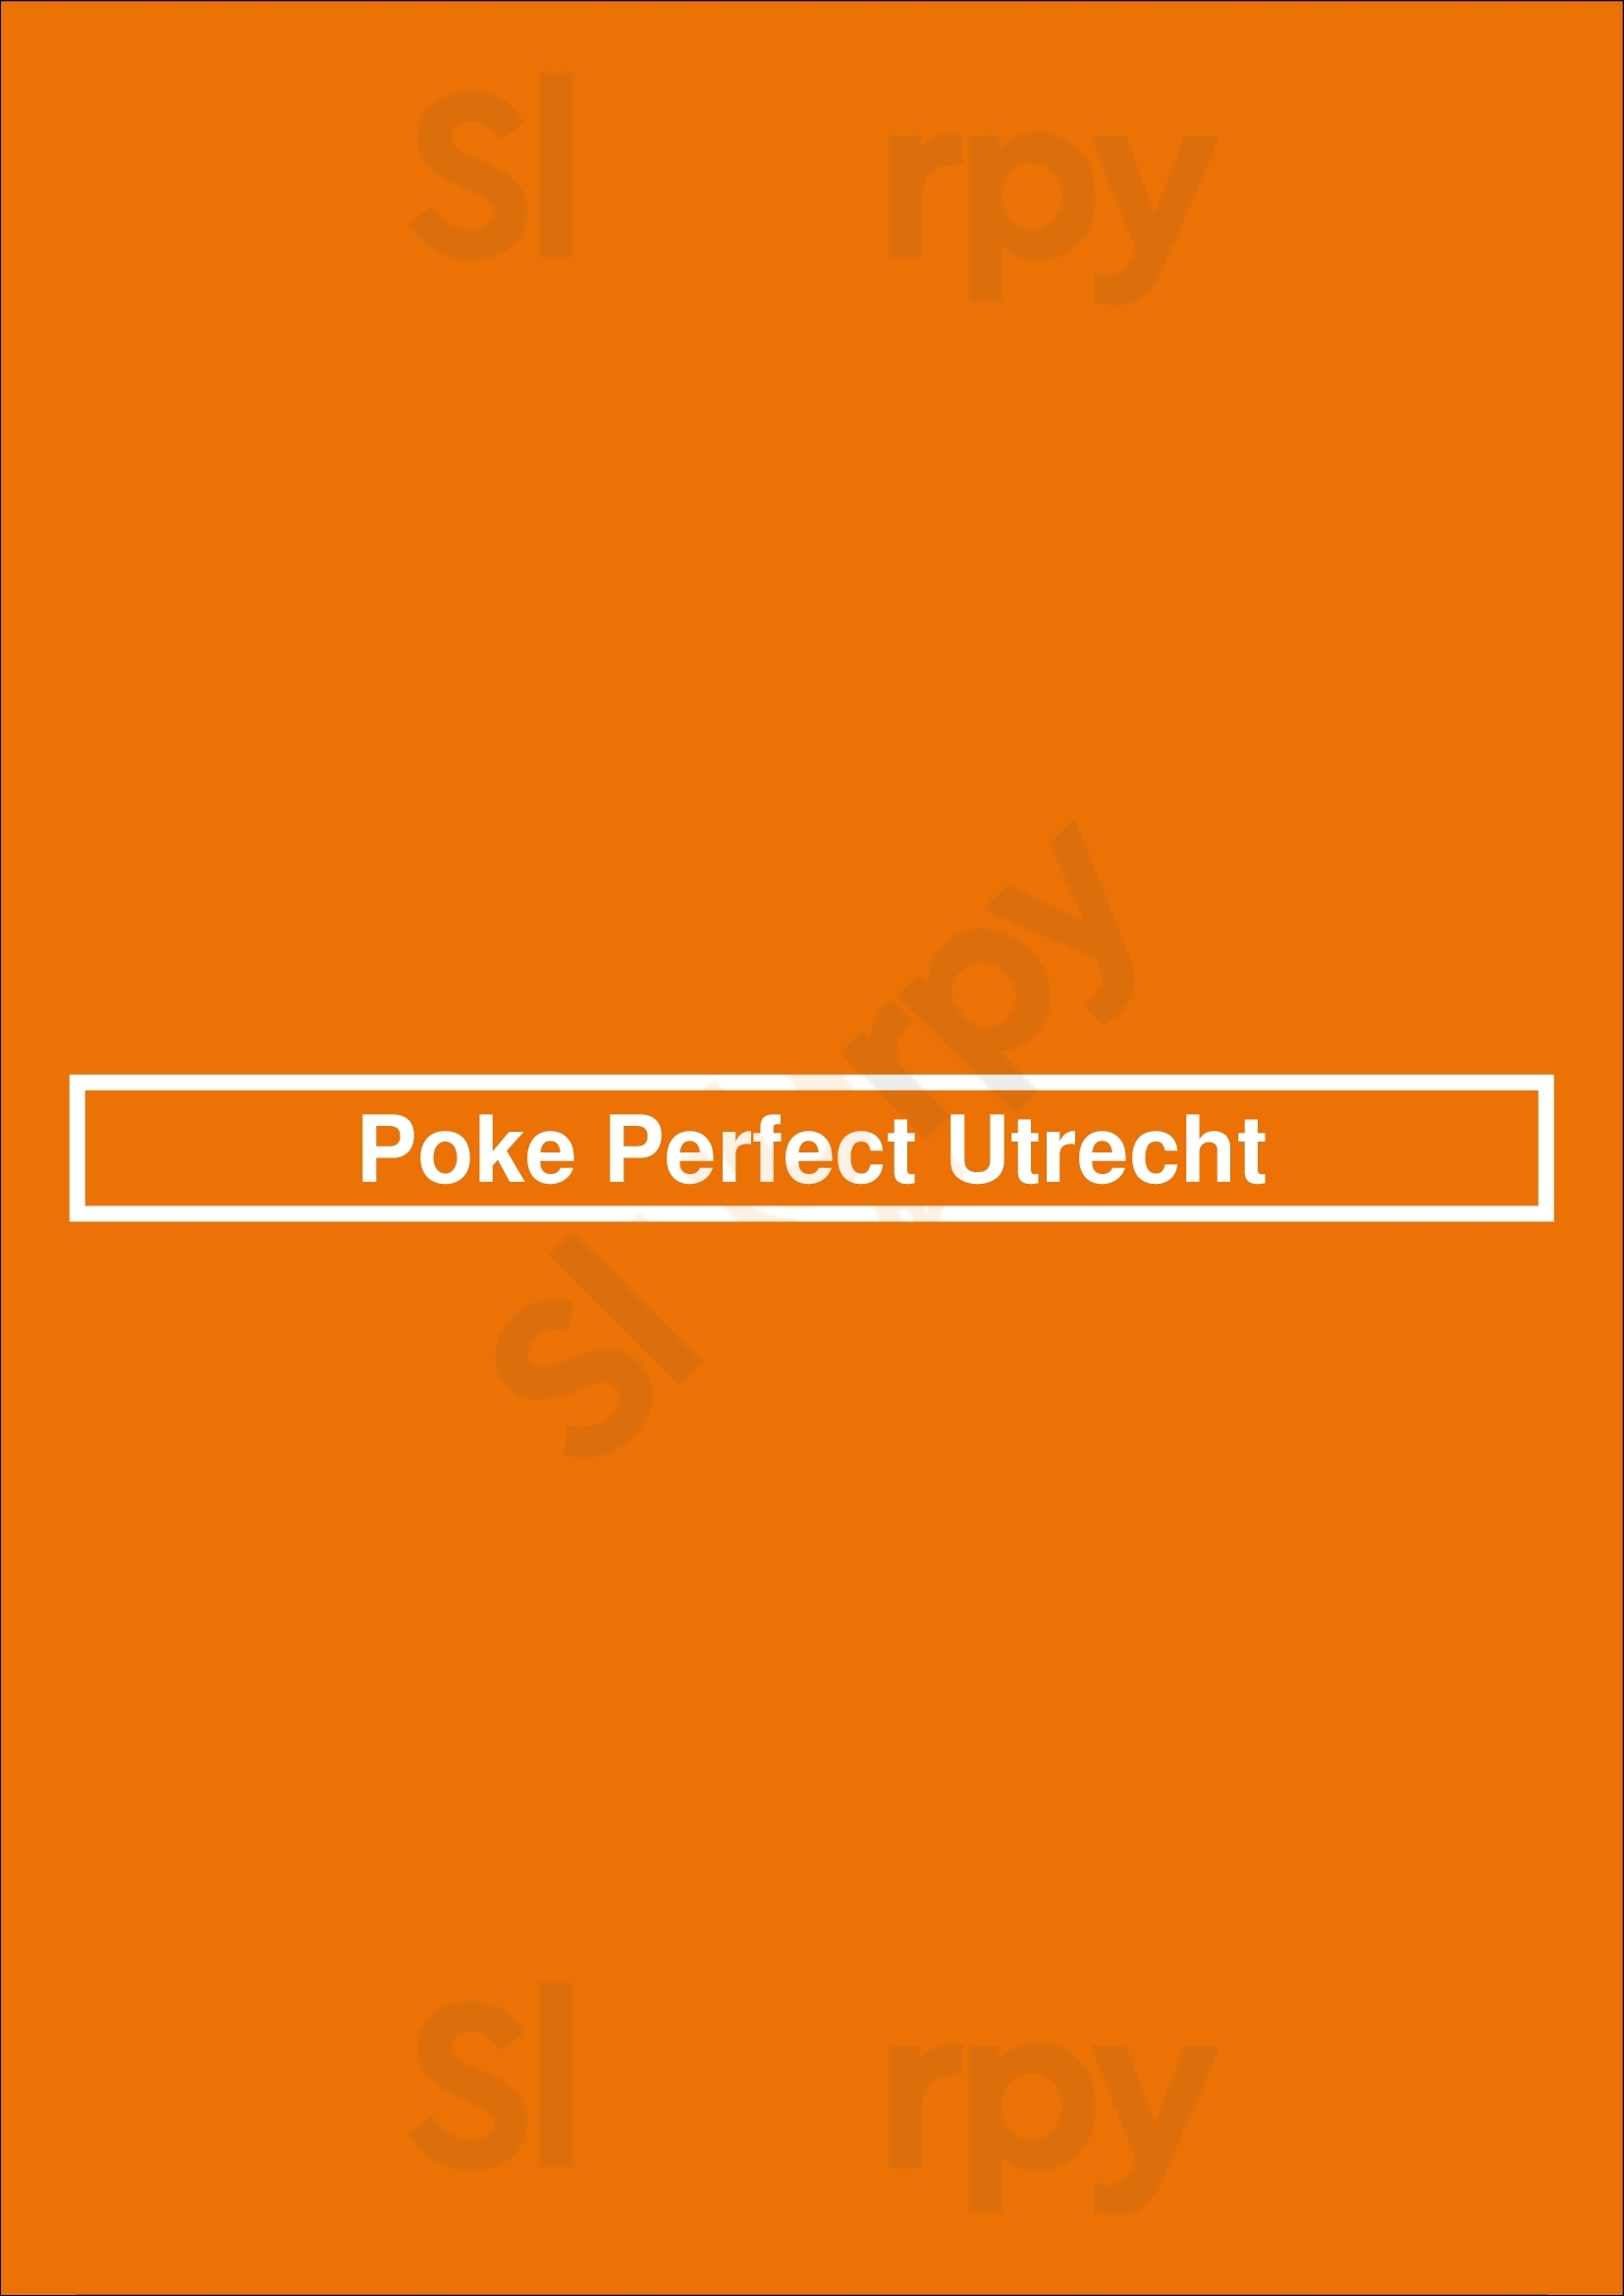 Poke Perfect Utrecht Utrecht Menu - 1